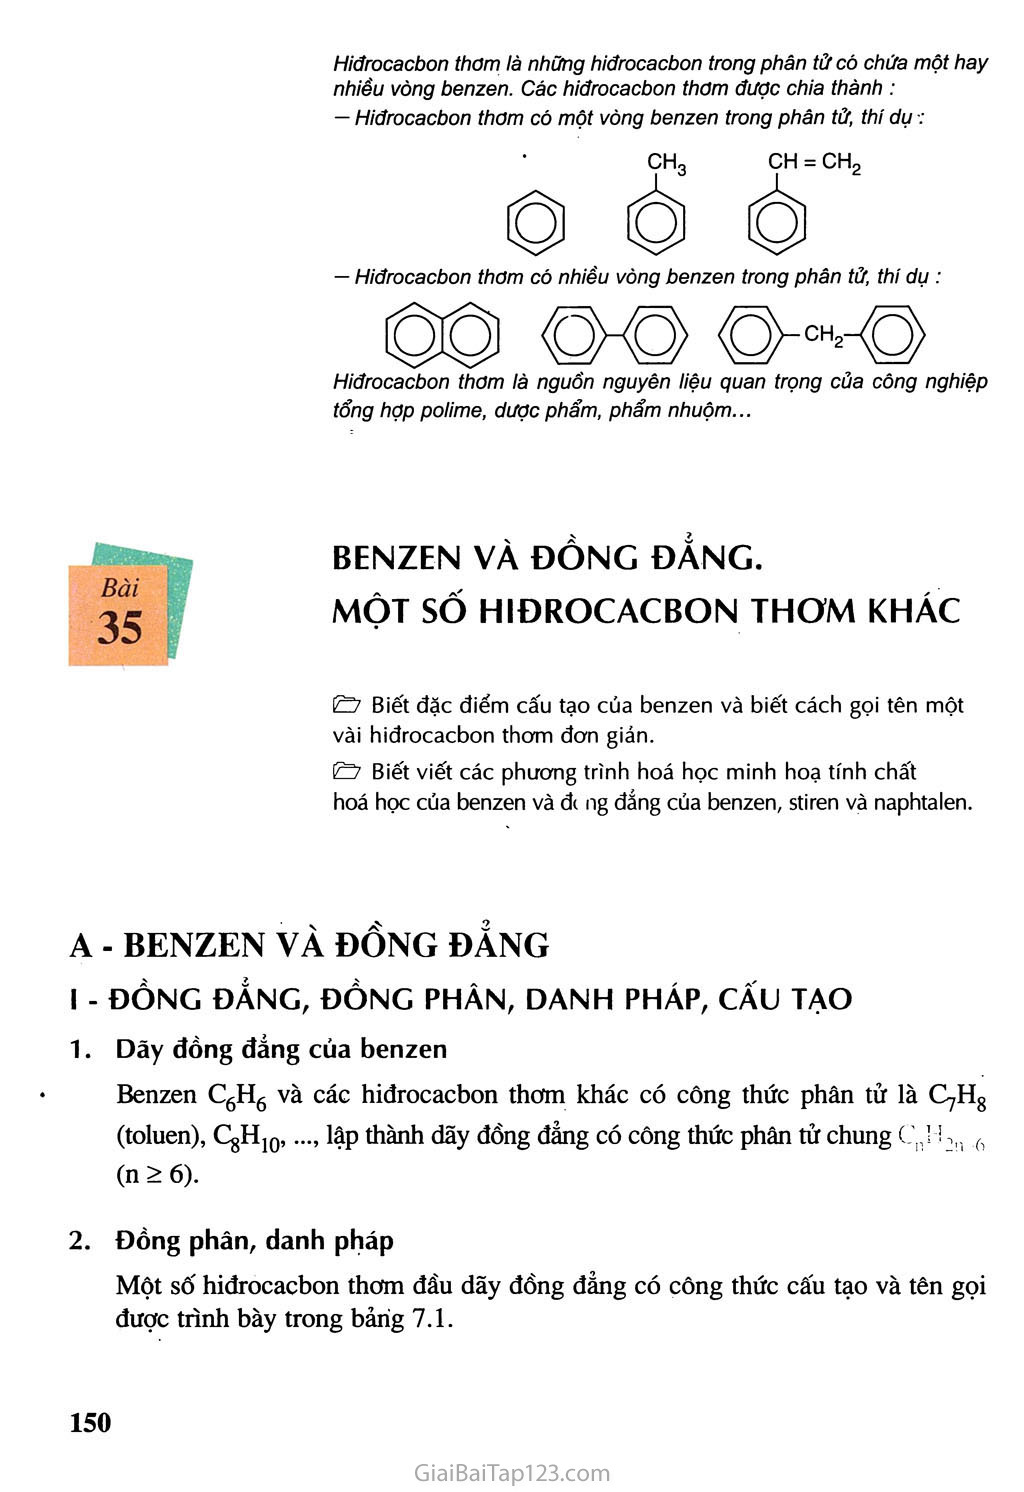 Bài 35: Benzen và đồng đẳng - Một số hiđrocacbon thơm khác trang 2